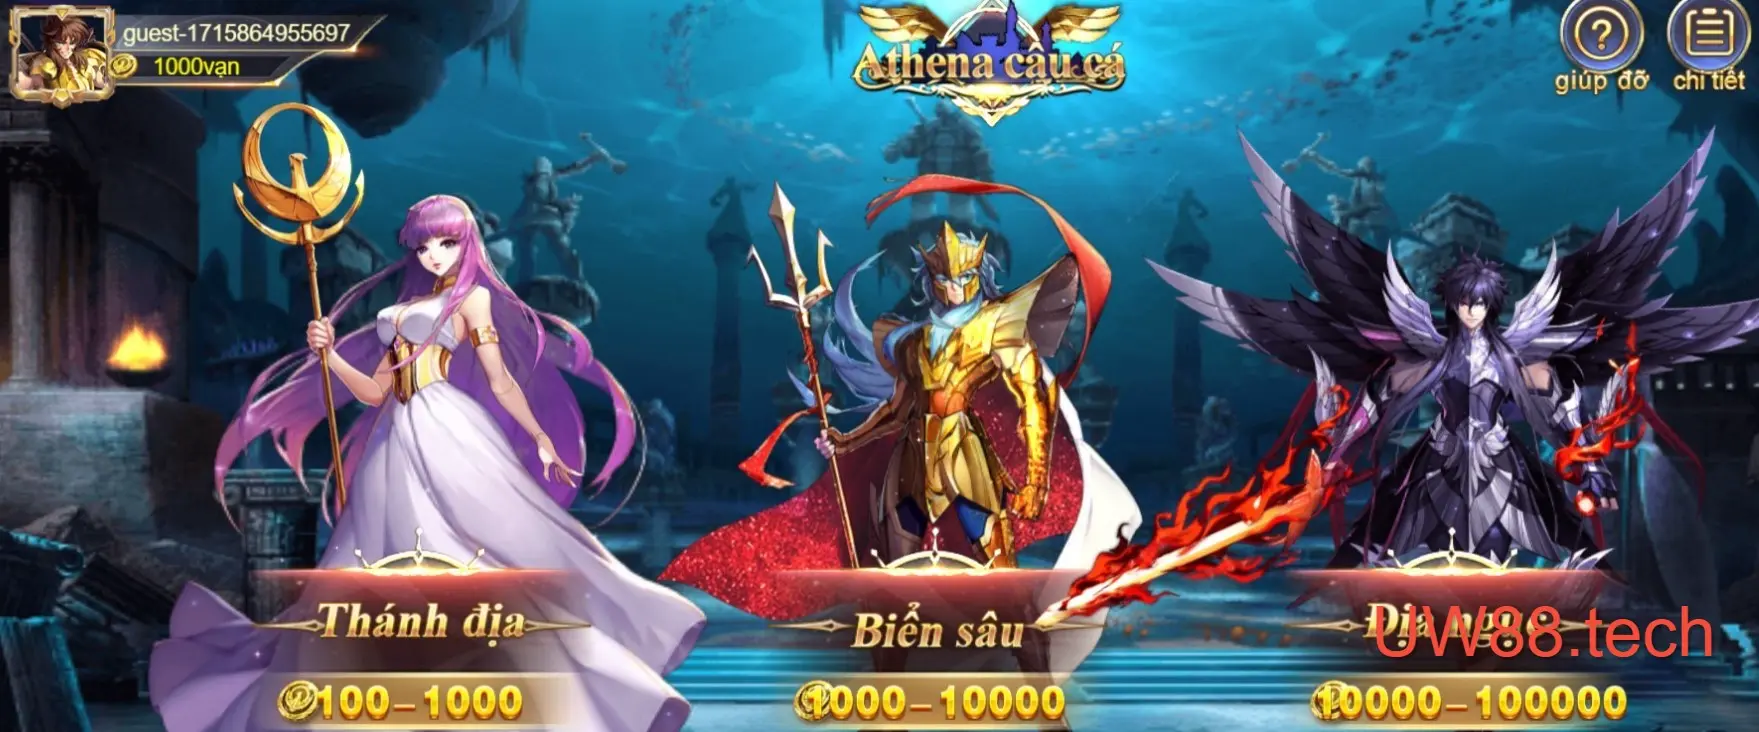 Athena Fishing – Game bắn cá siêu HOT tại UW88